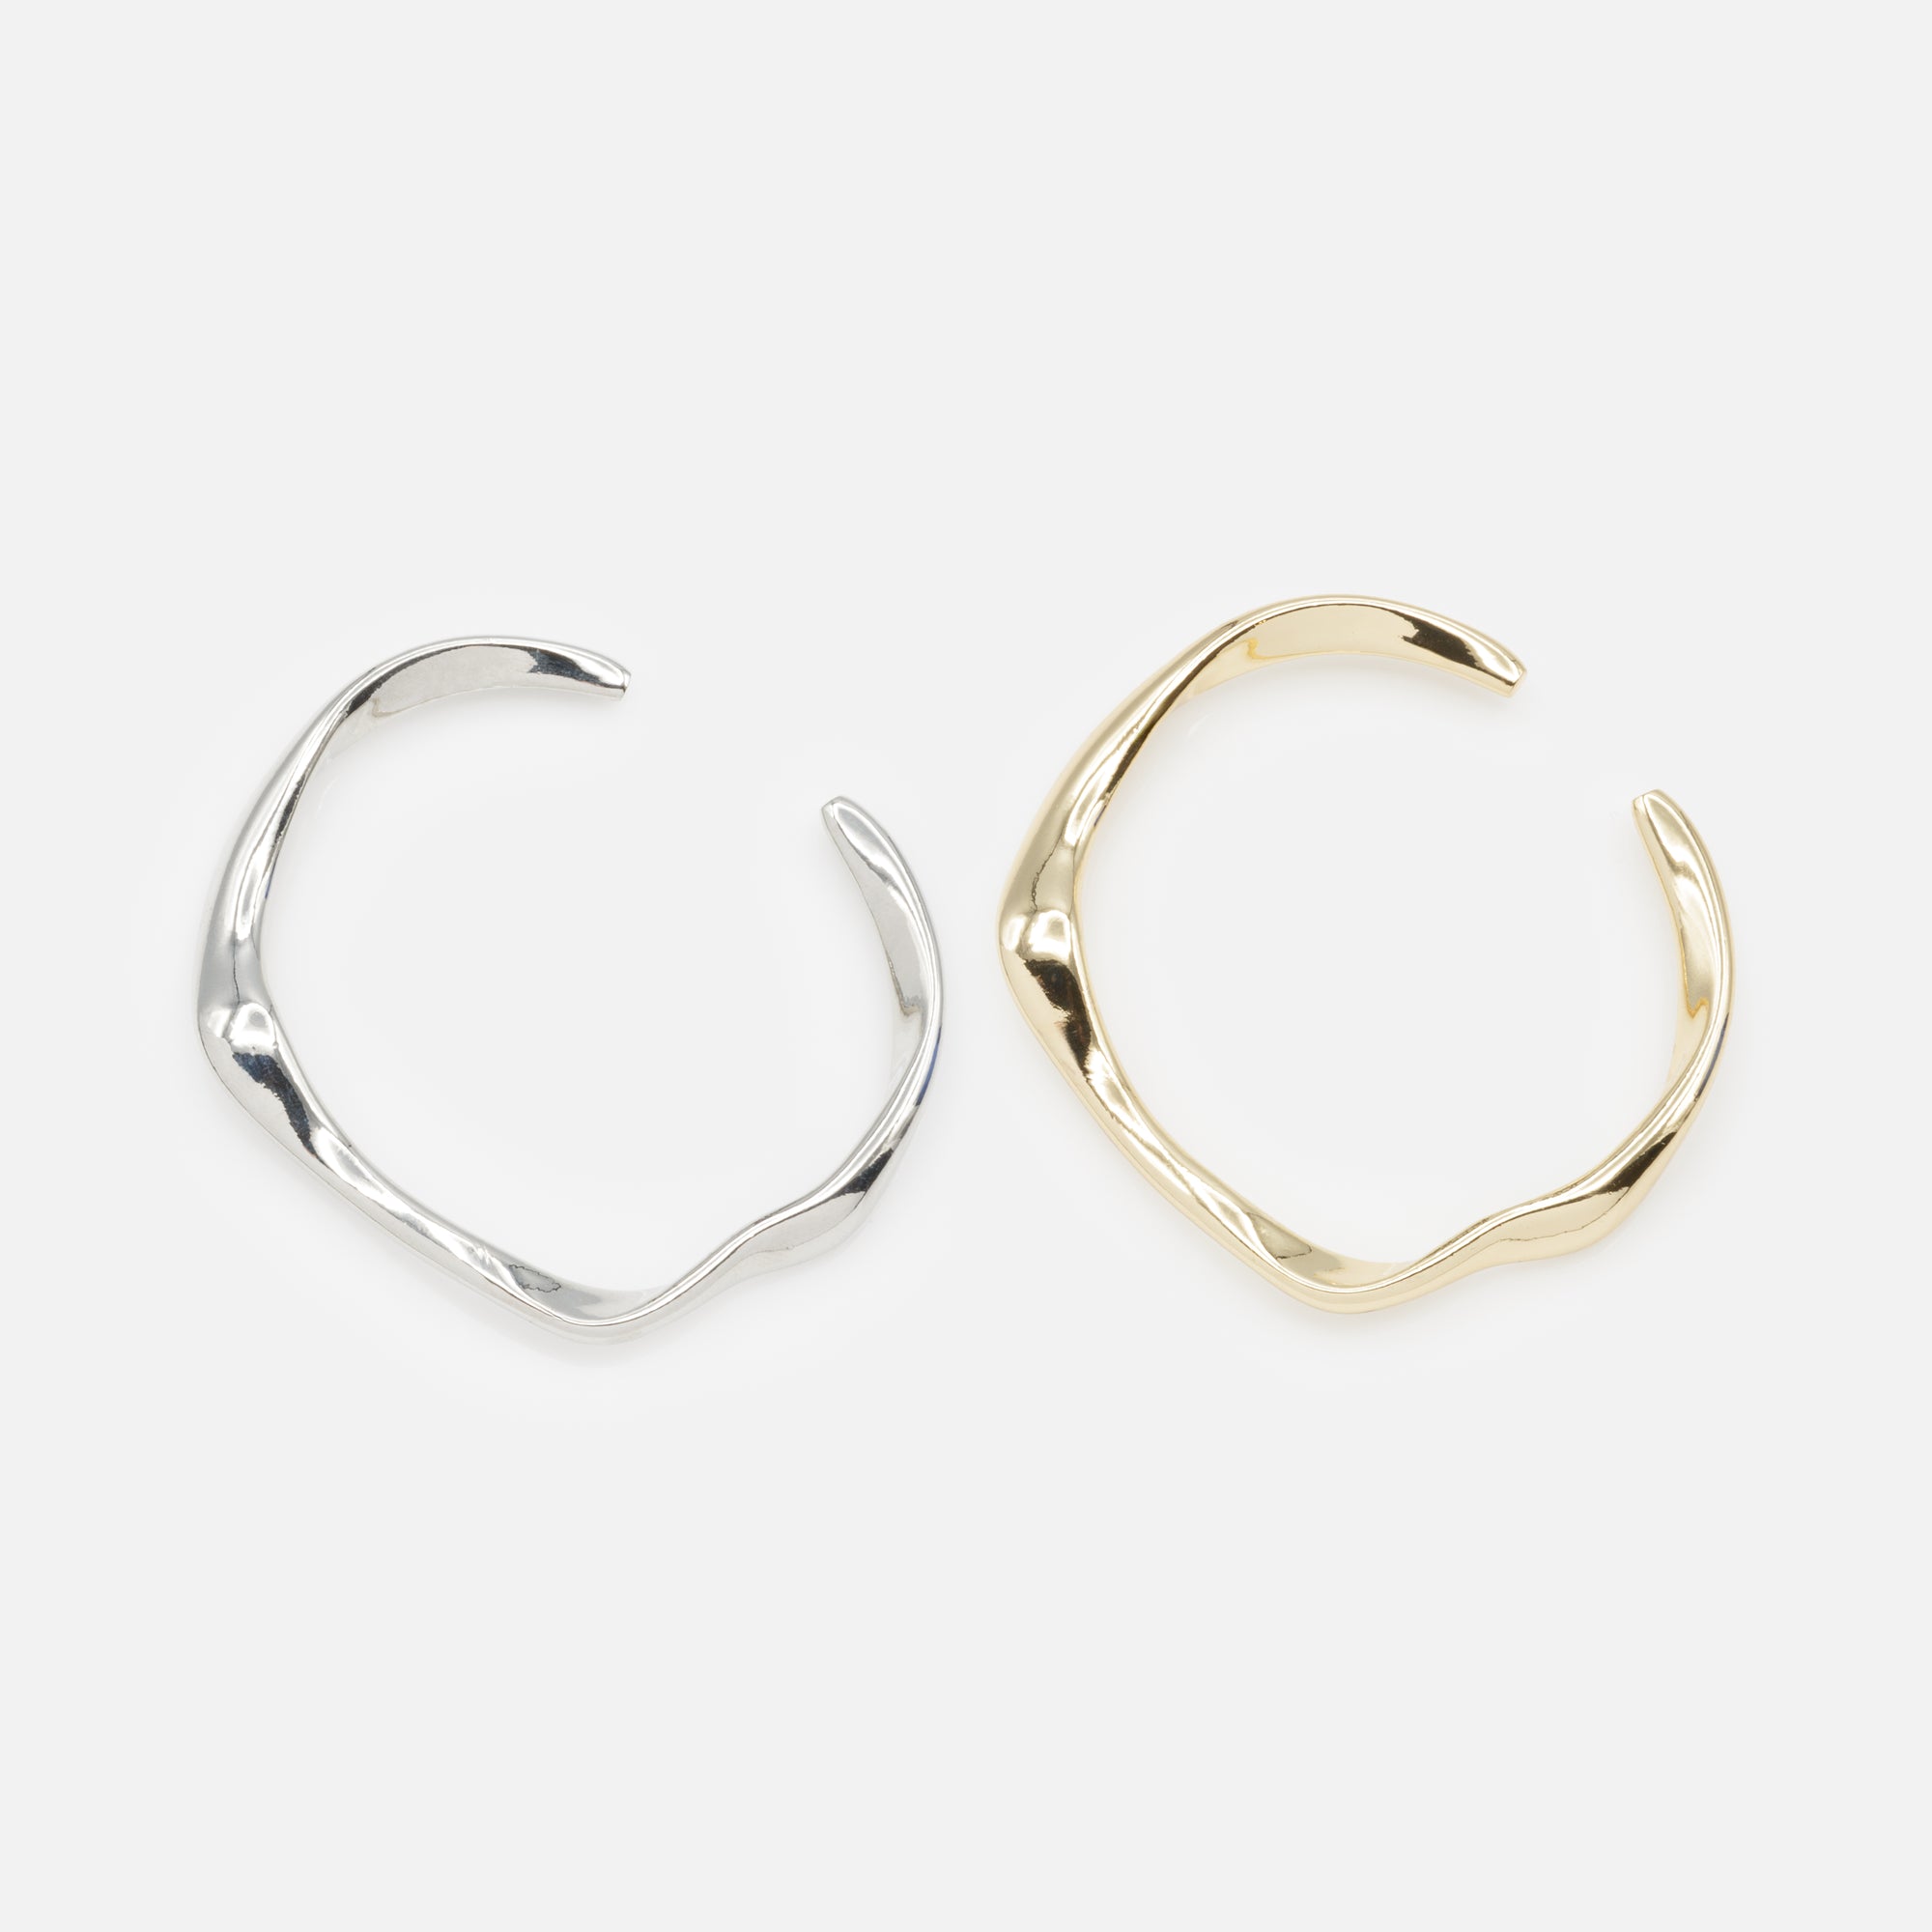 Duo de bracelets rigides doré et argenté effet vagues